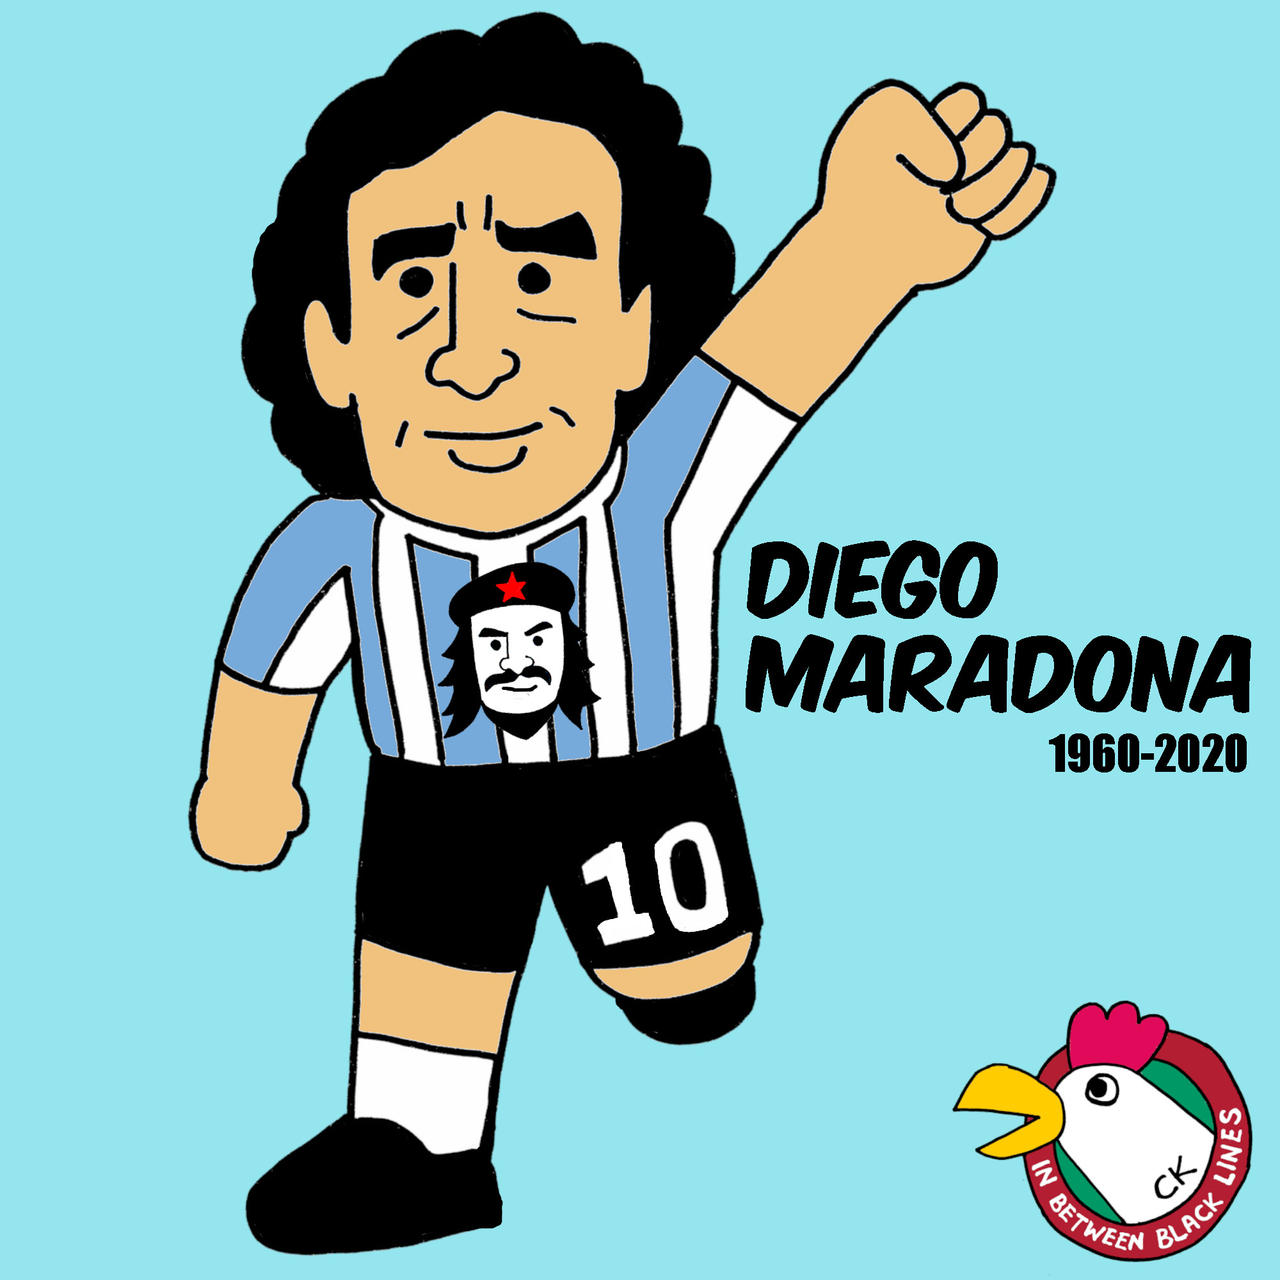 Diego Maradona (1960-2020)